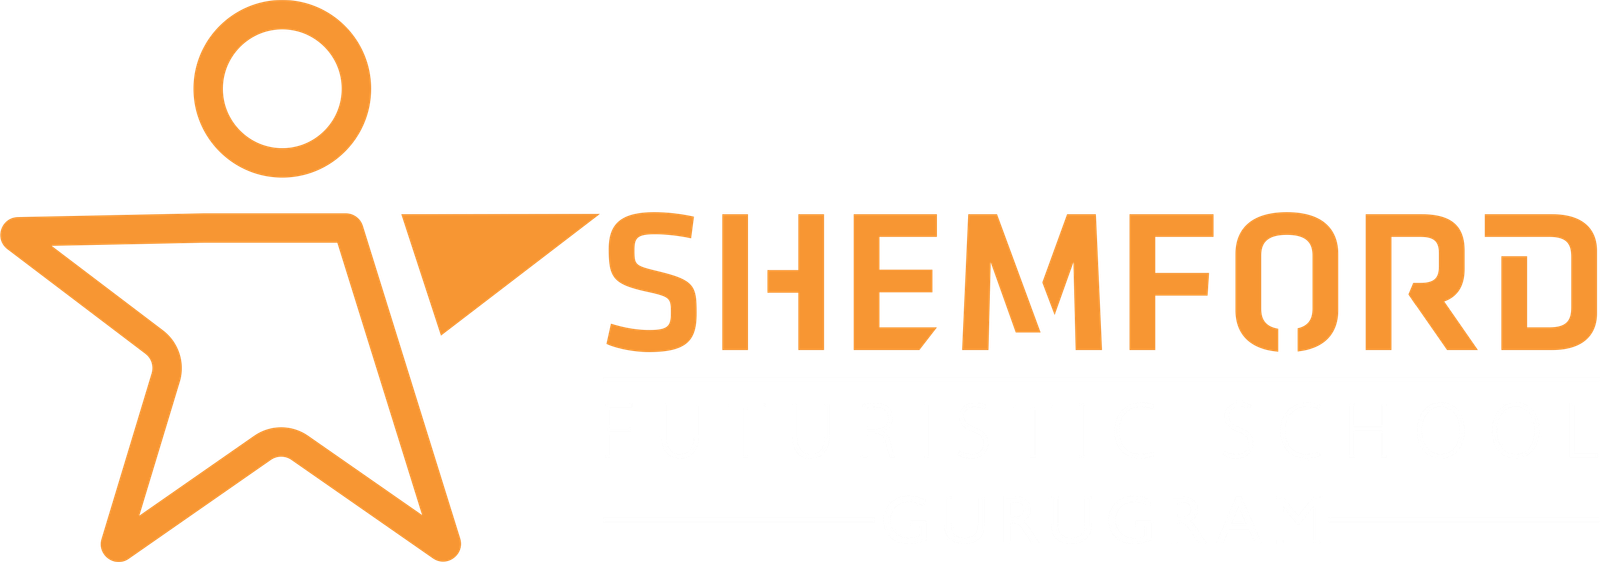 Shemford futursitic school gurugram logo